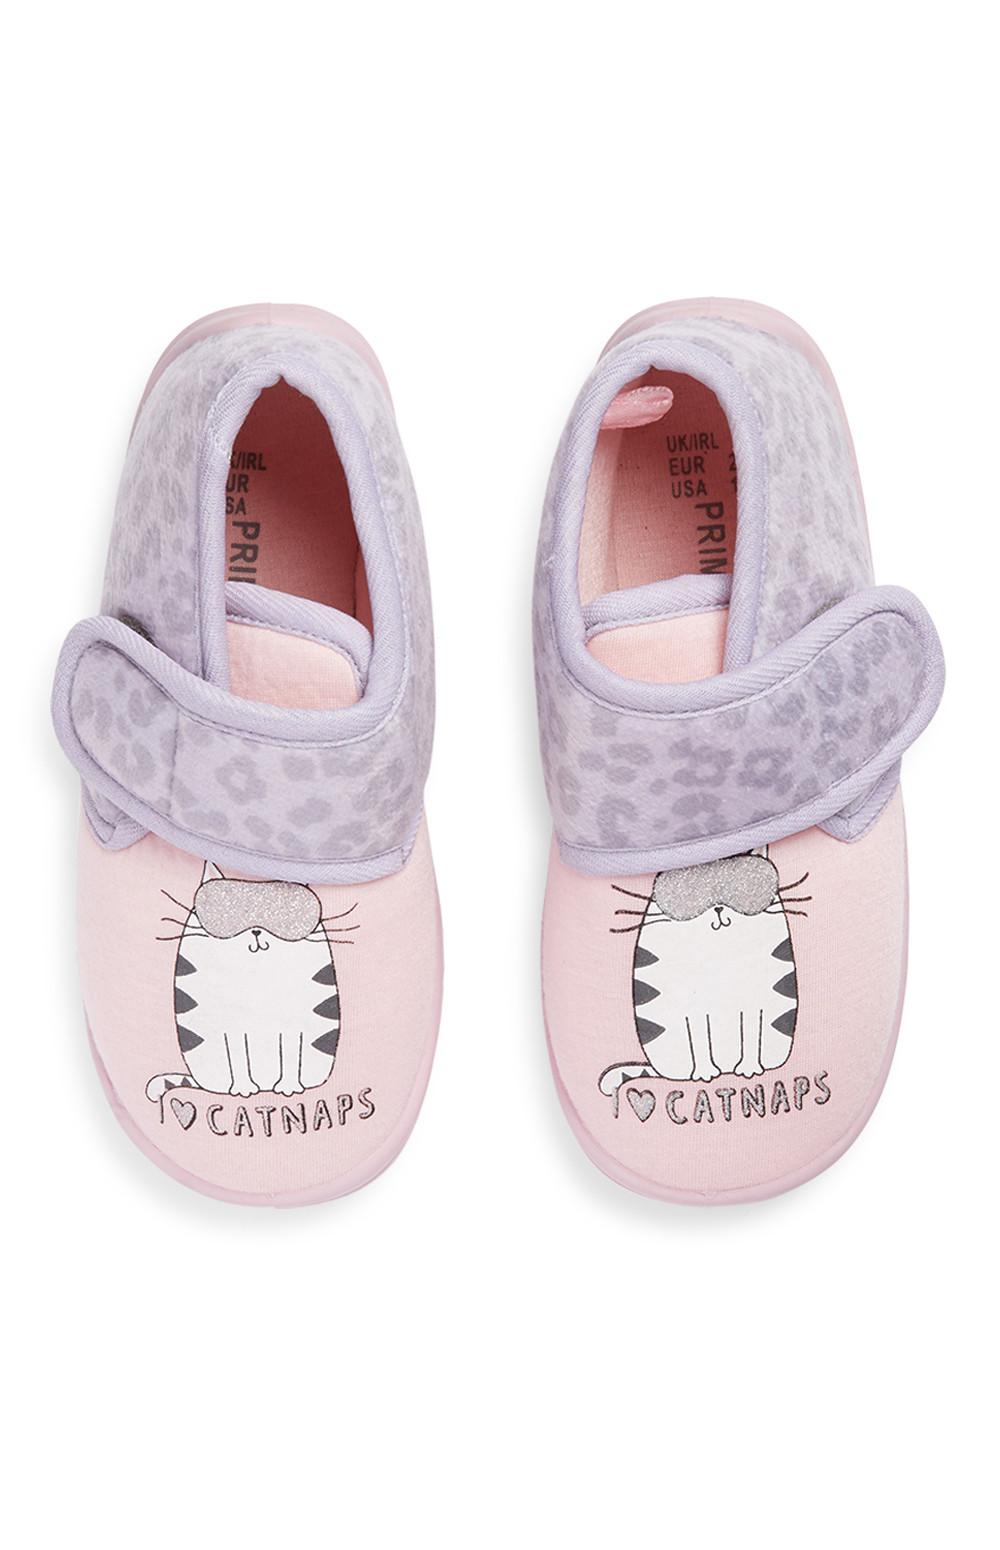 primark kids slippers